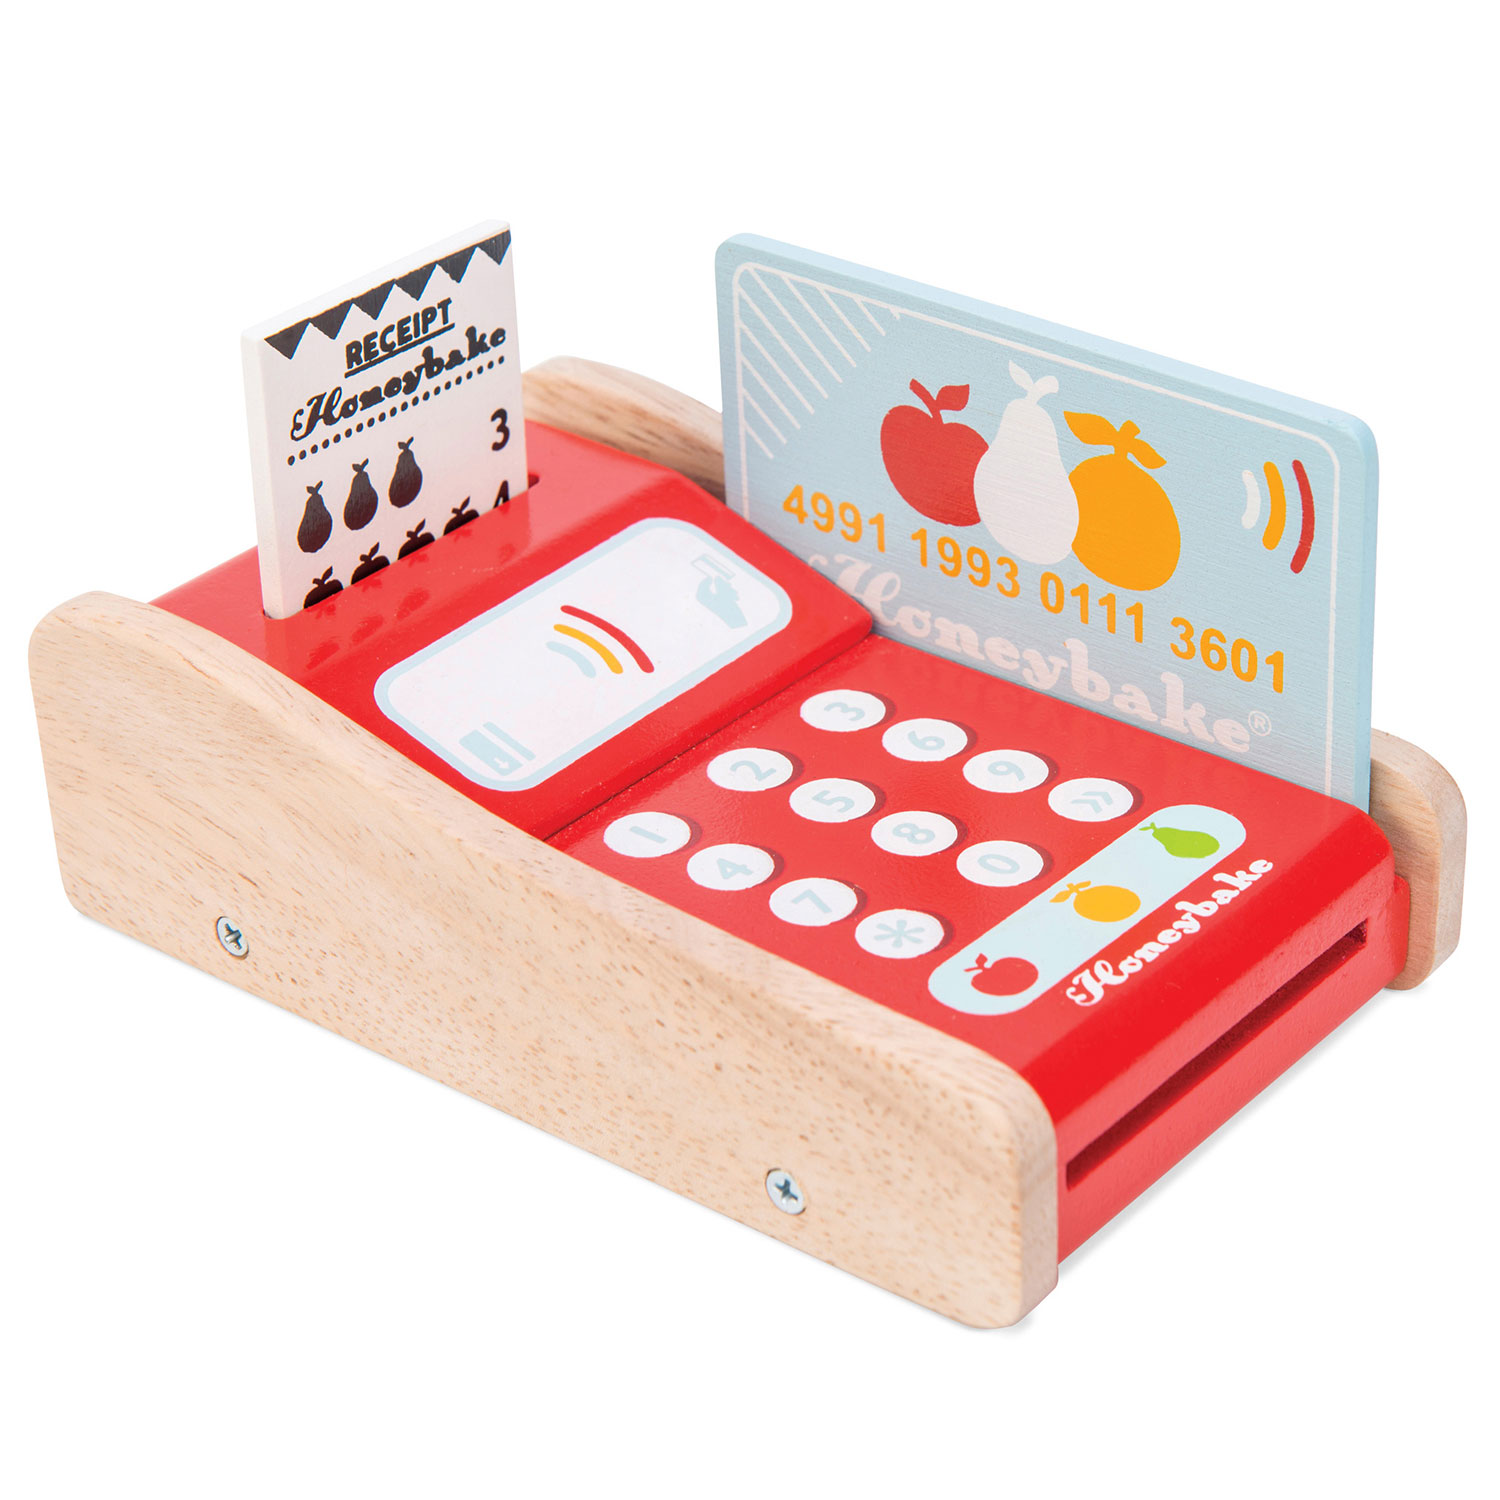 Kartenlesegerät / Wooden Shop Card Machine